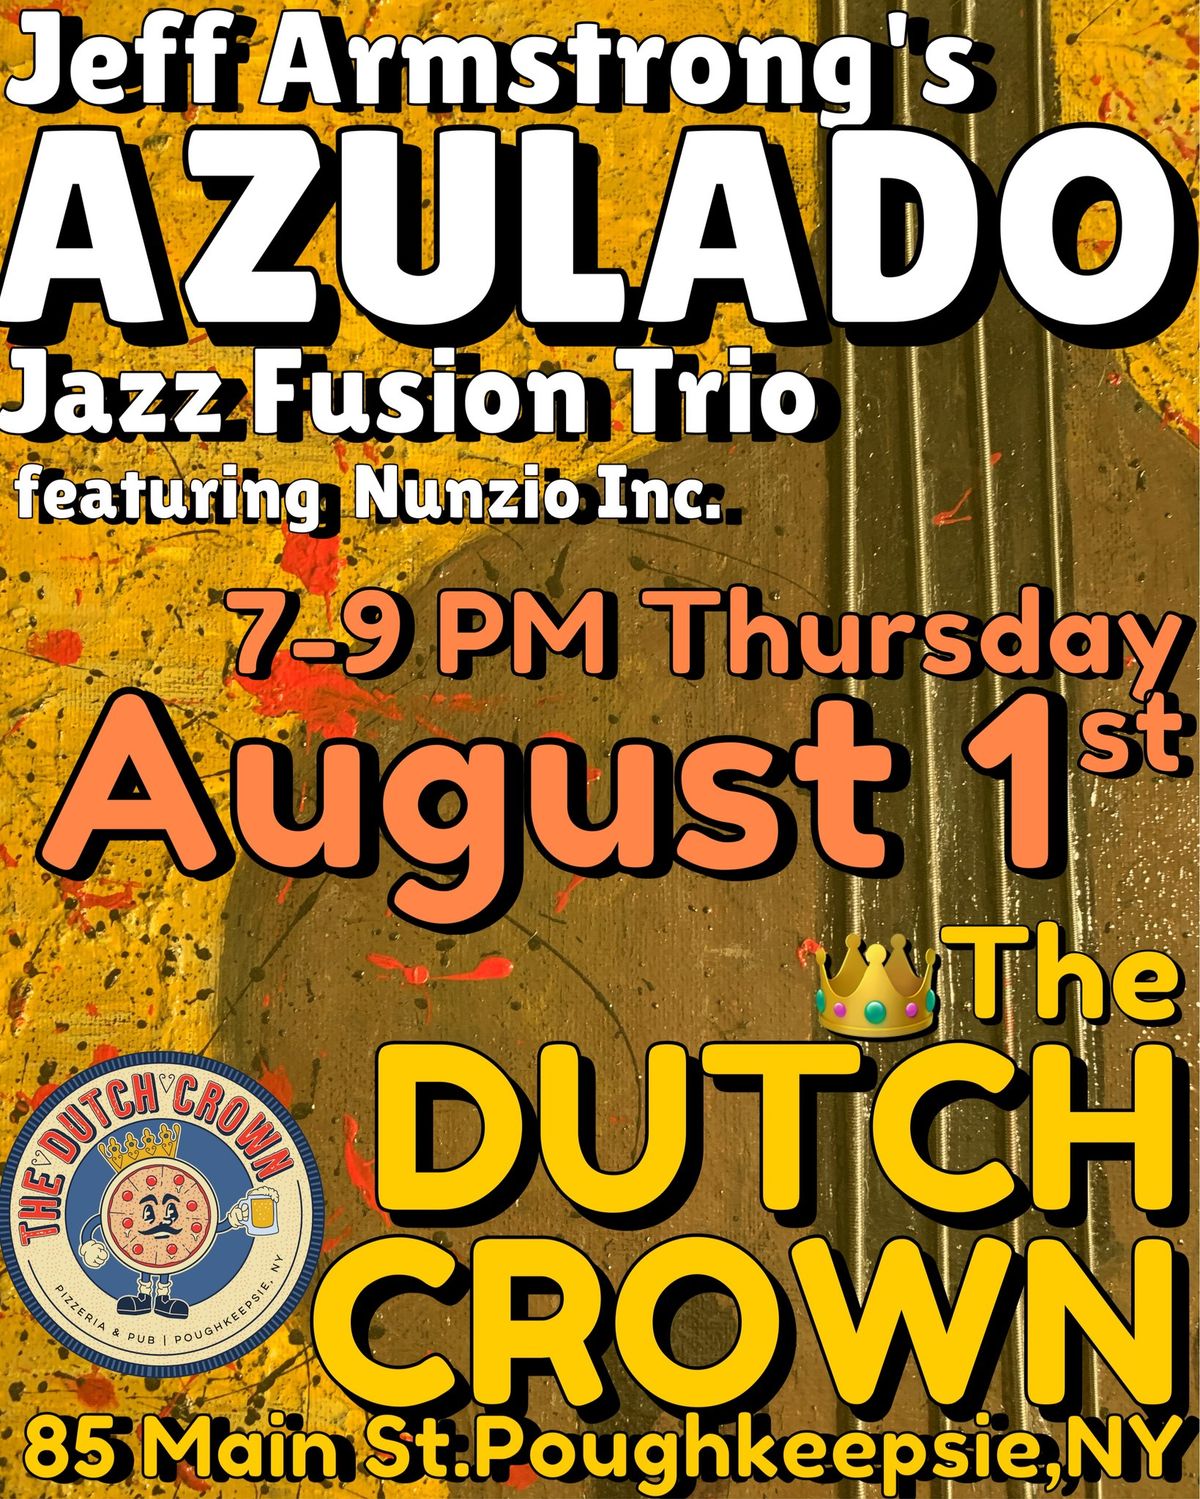 Jeff Armstrong Azulado Jazz Trio at Dutch Crown Poughkeepsie NY